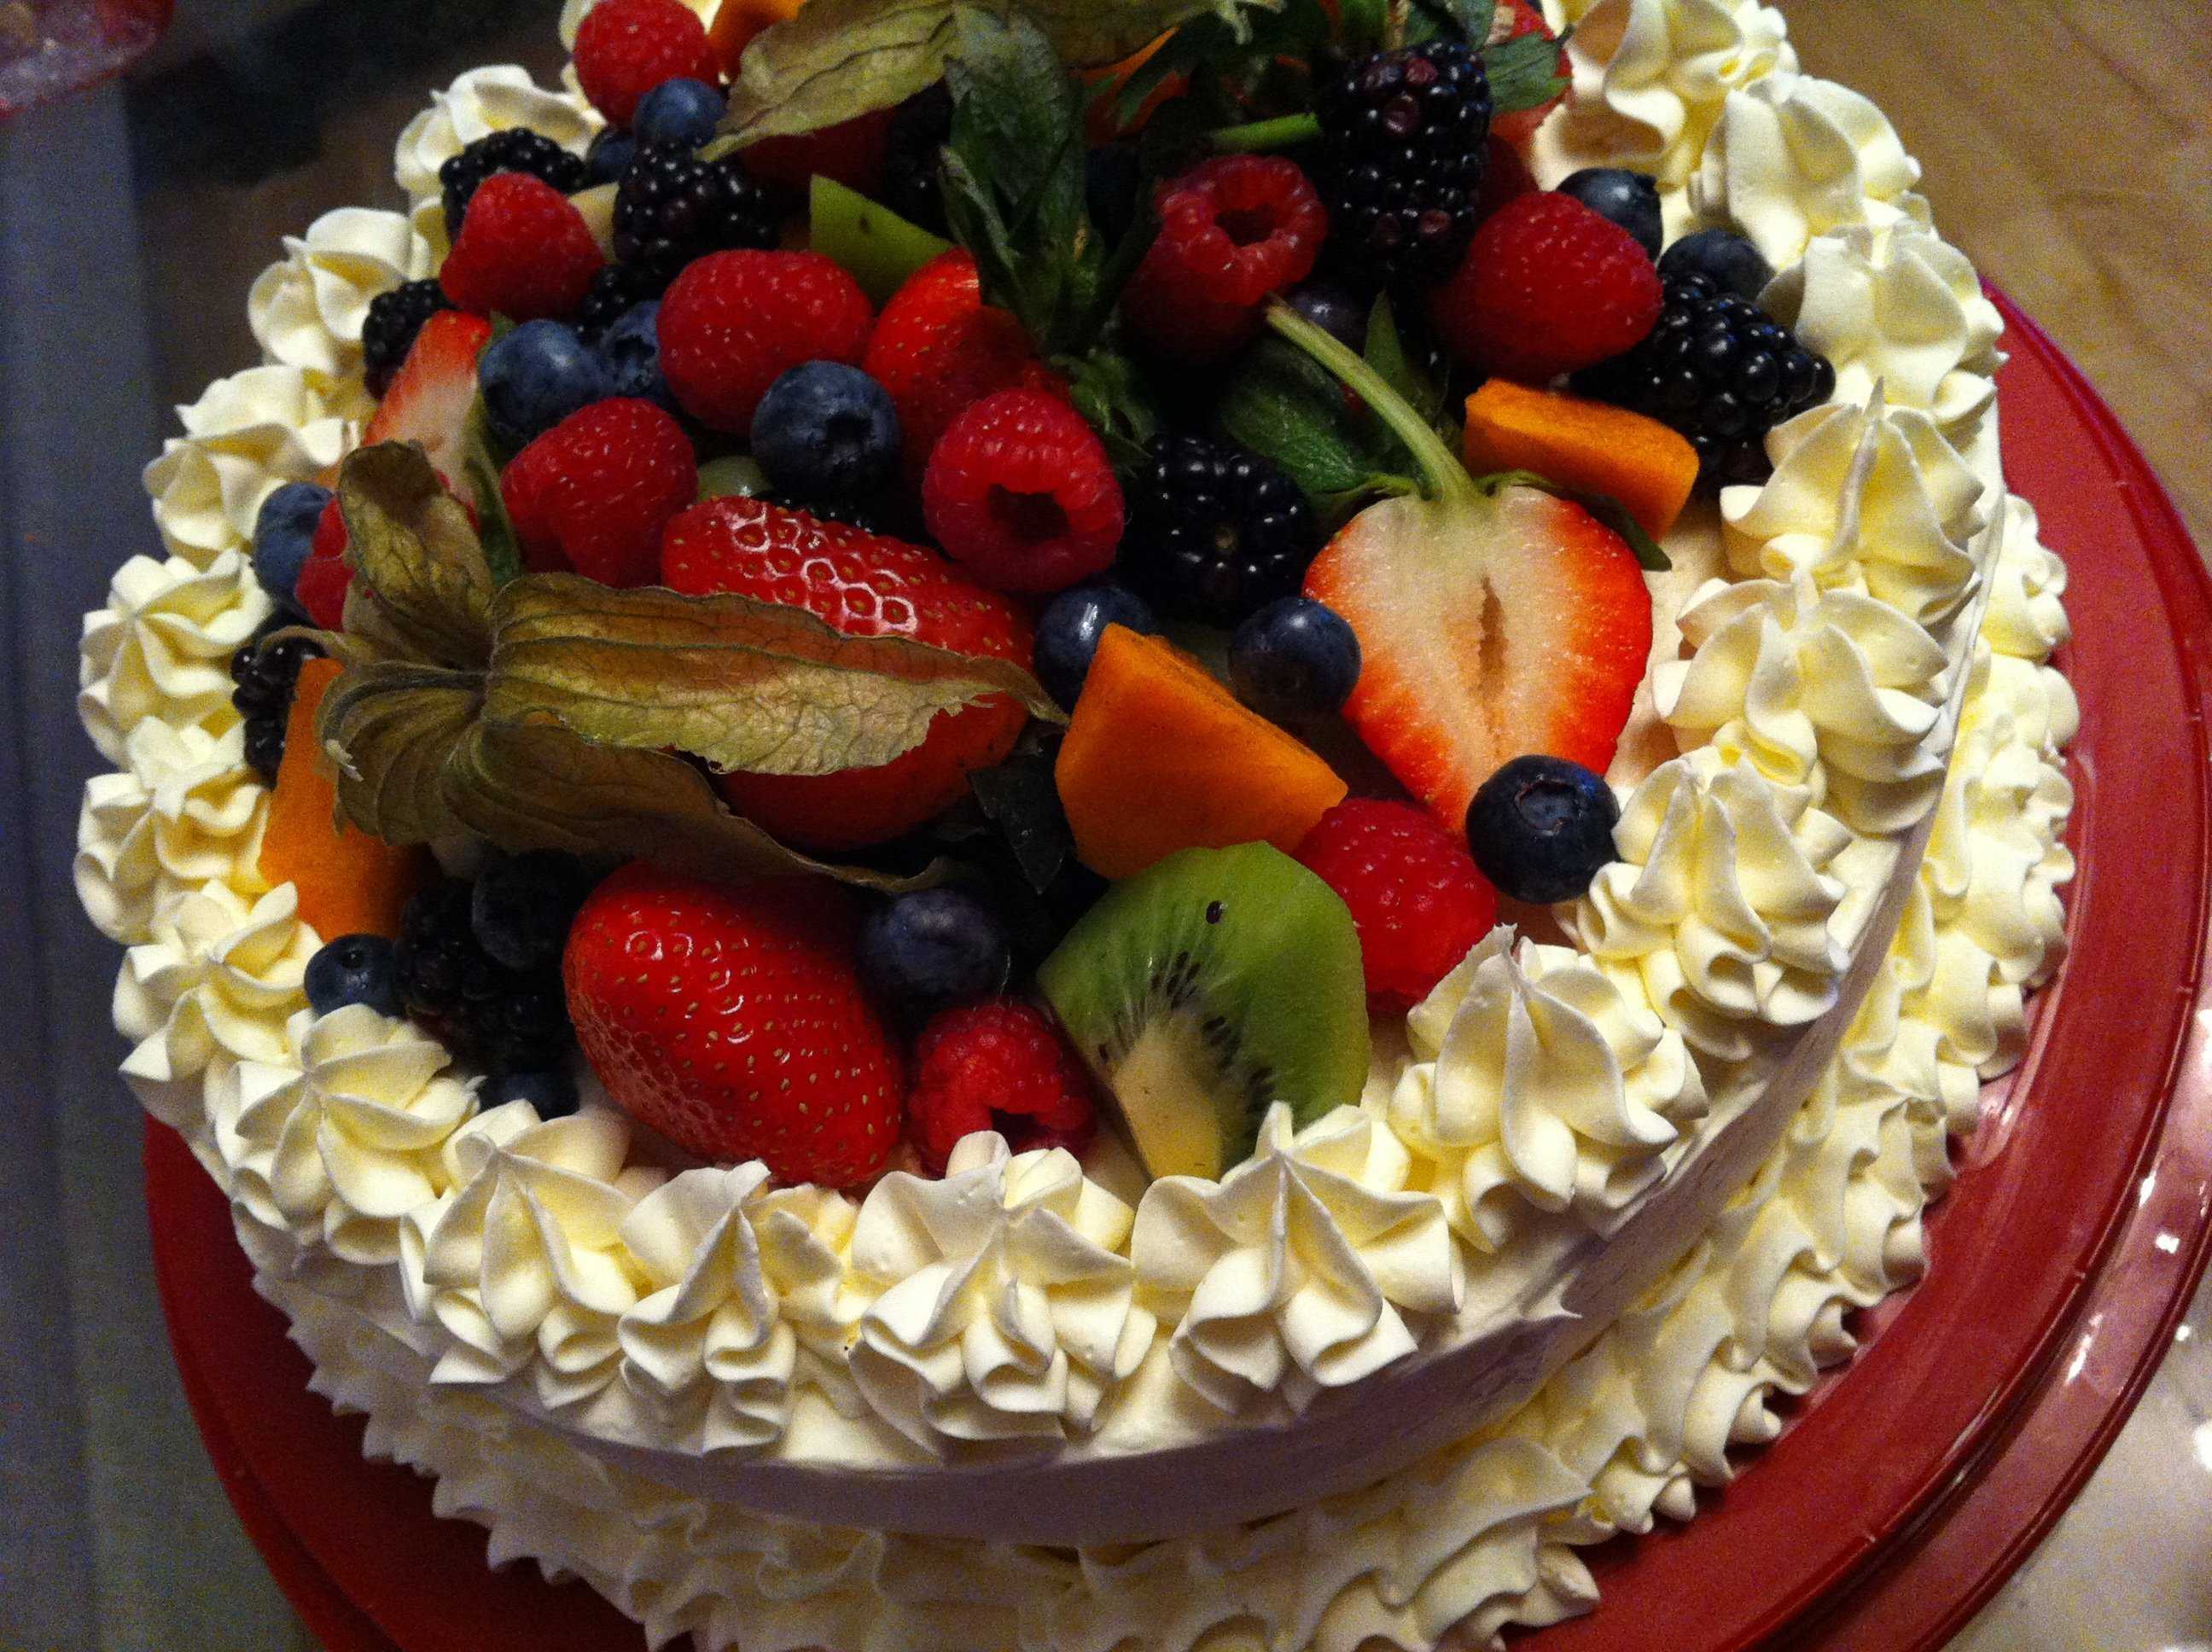 Где красивый торт. Украшение торта фруктами и ягодами. Украшение торта ягодами. Торт украшенный фруктами. Красиво украсить торт фруктами.